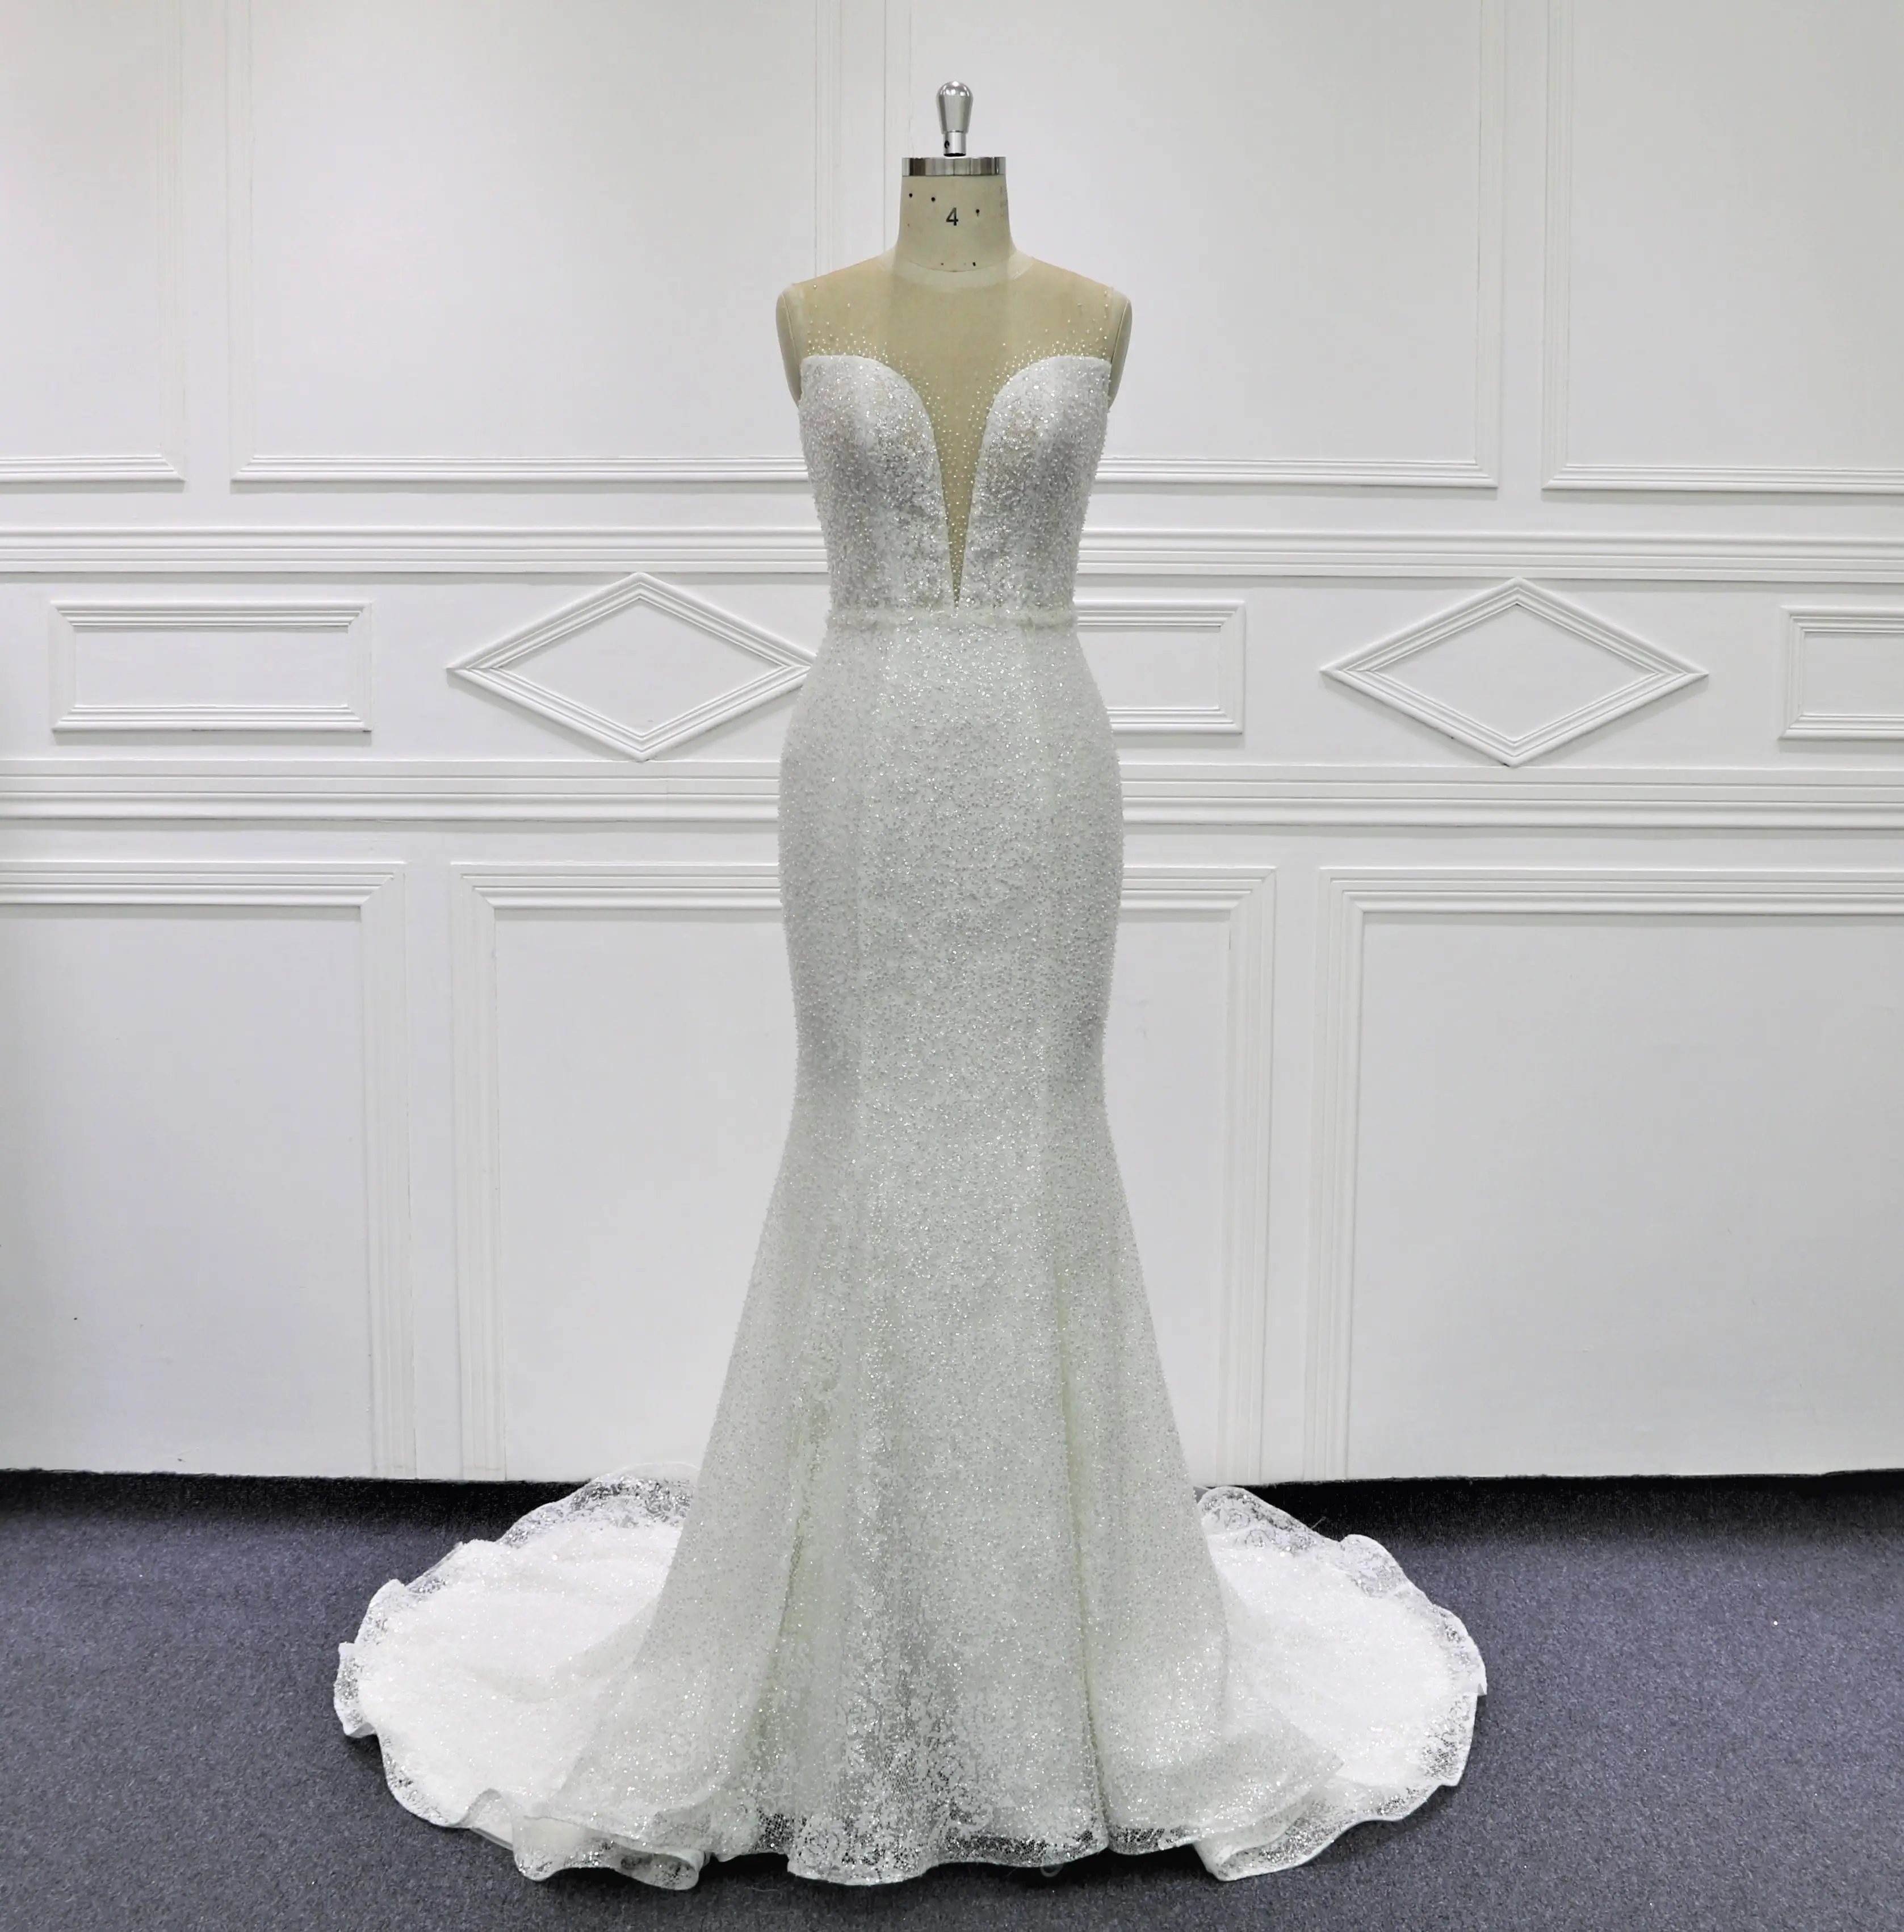 Beaury vestidos de novia de sirena de encaje brillante de alta calidad MK306 ilusión trasera con botones fiesta formal